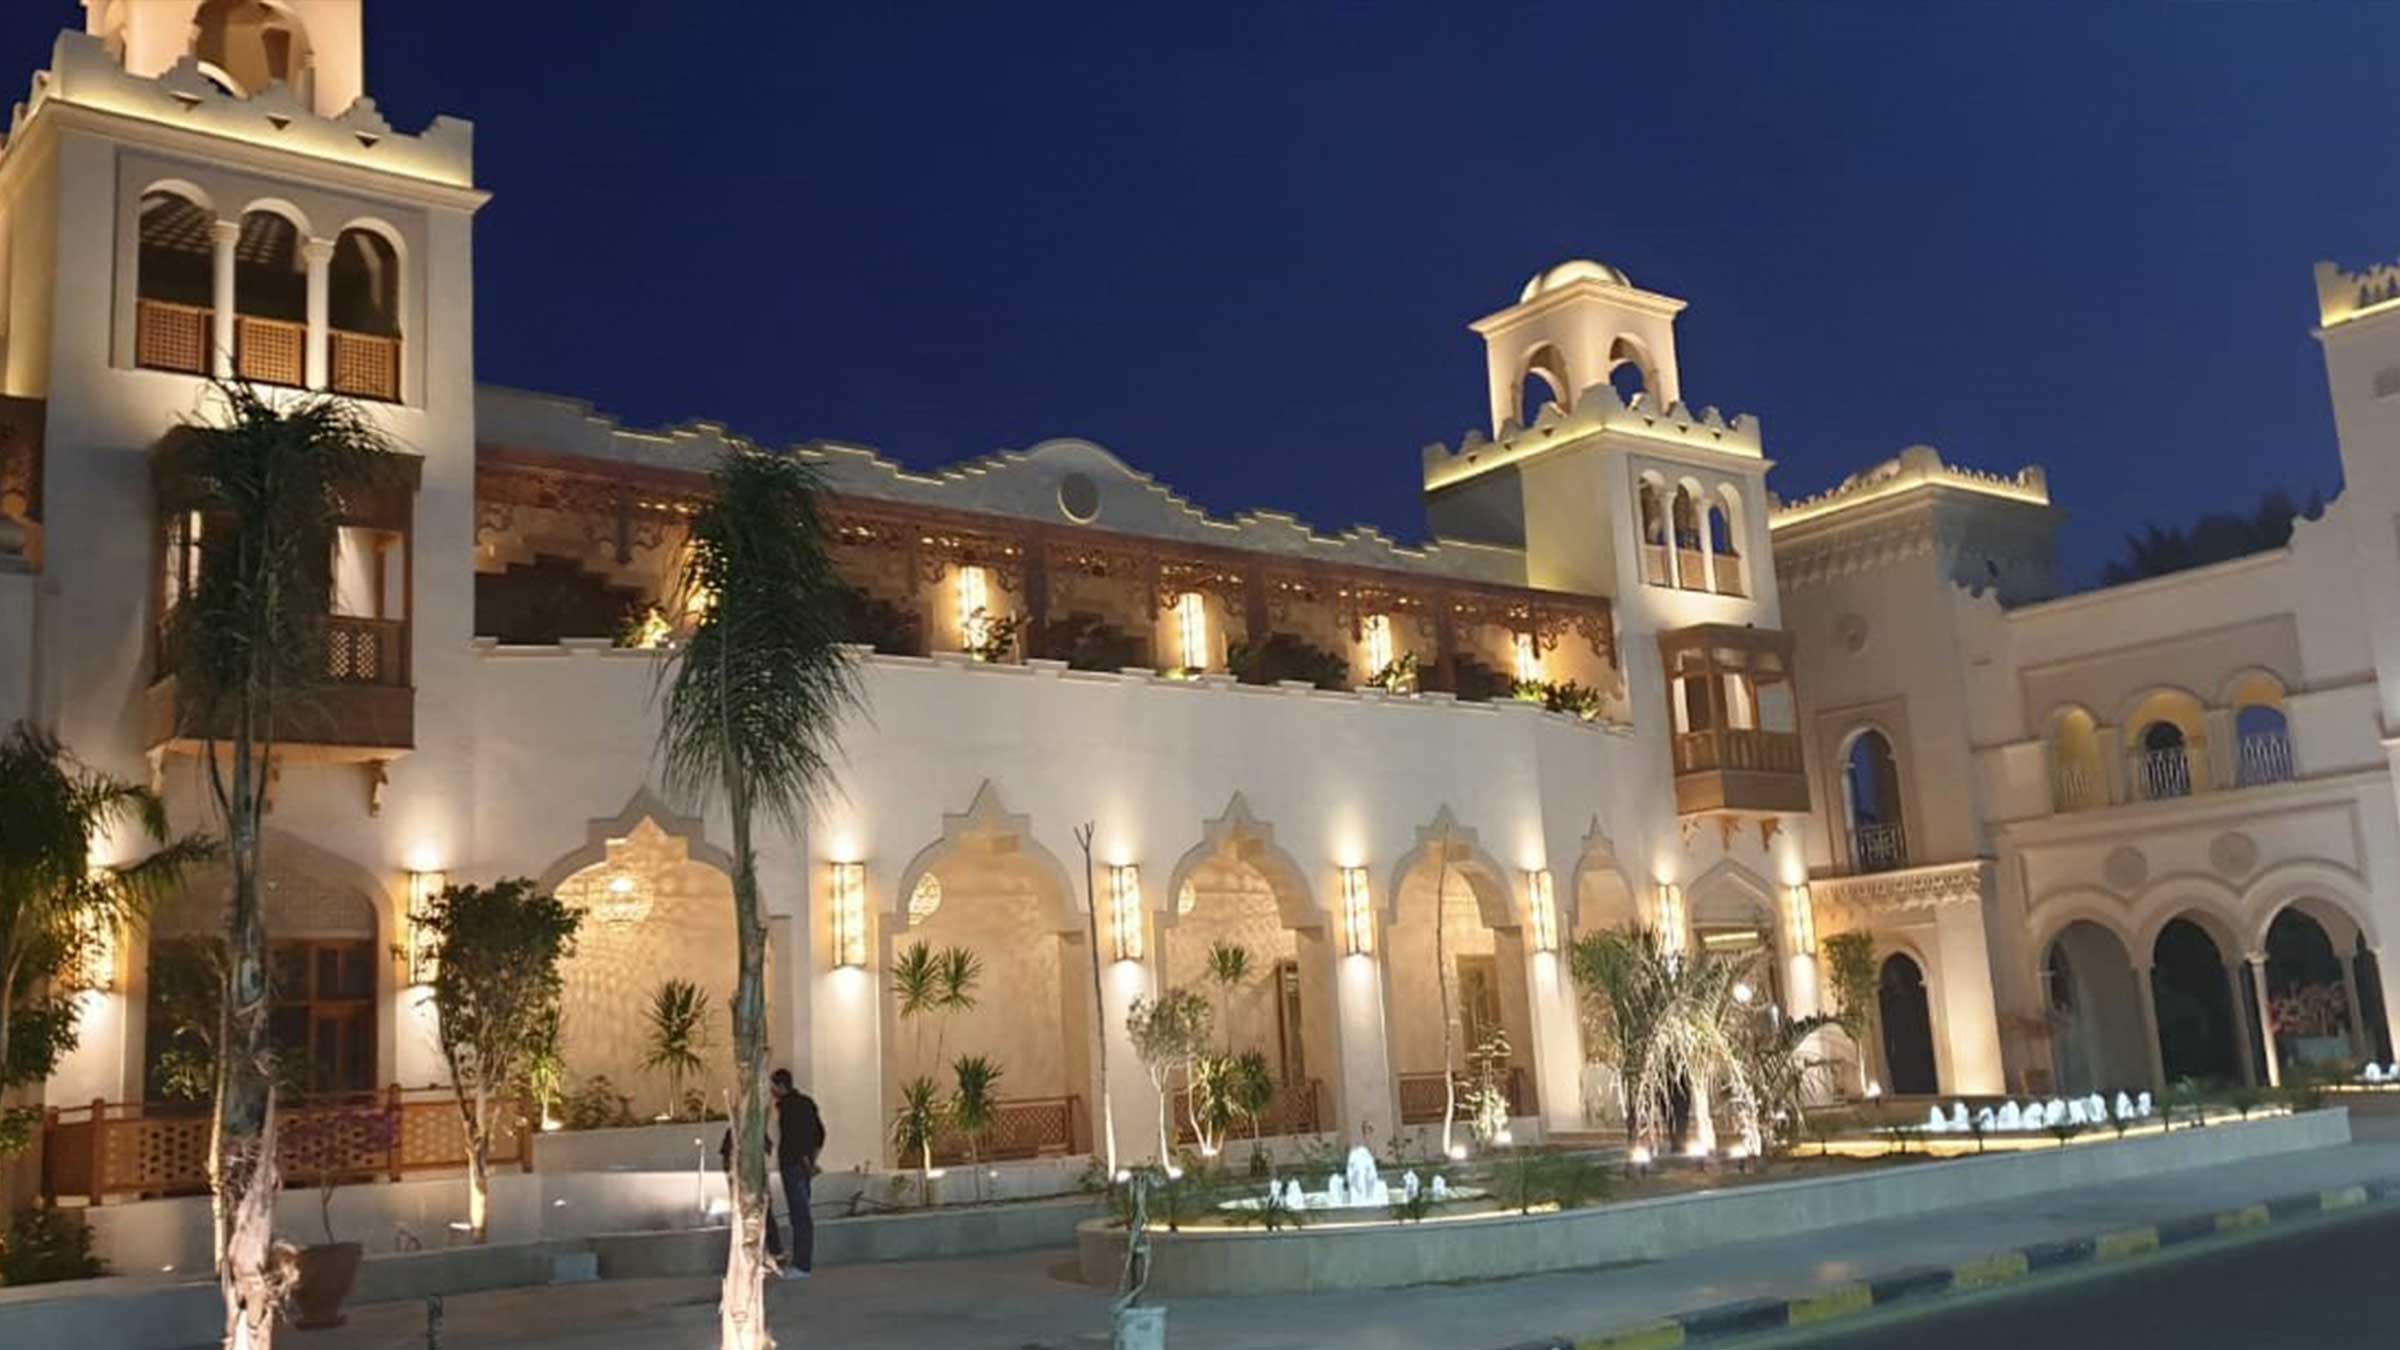 The Grand Palace Hurghada Egipto arquitecto tenerife